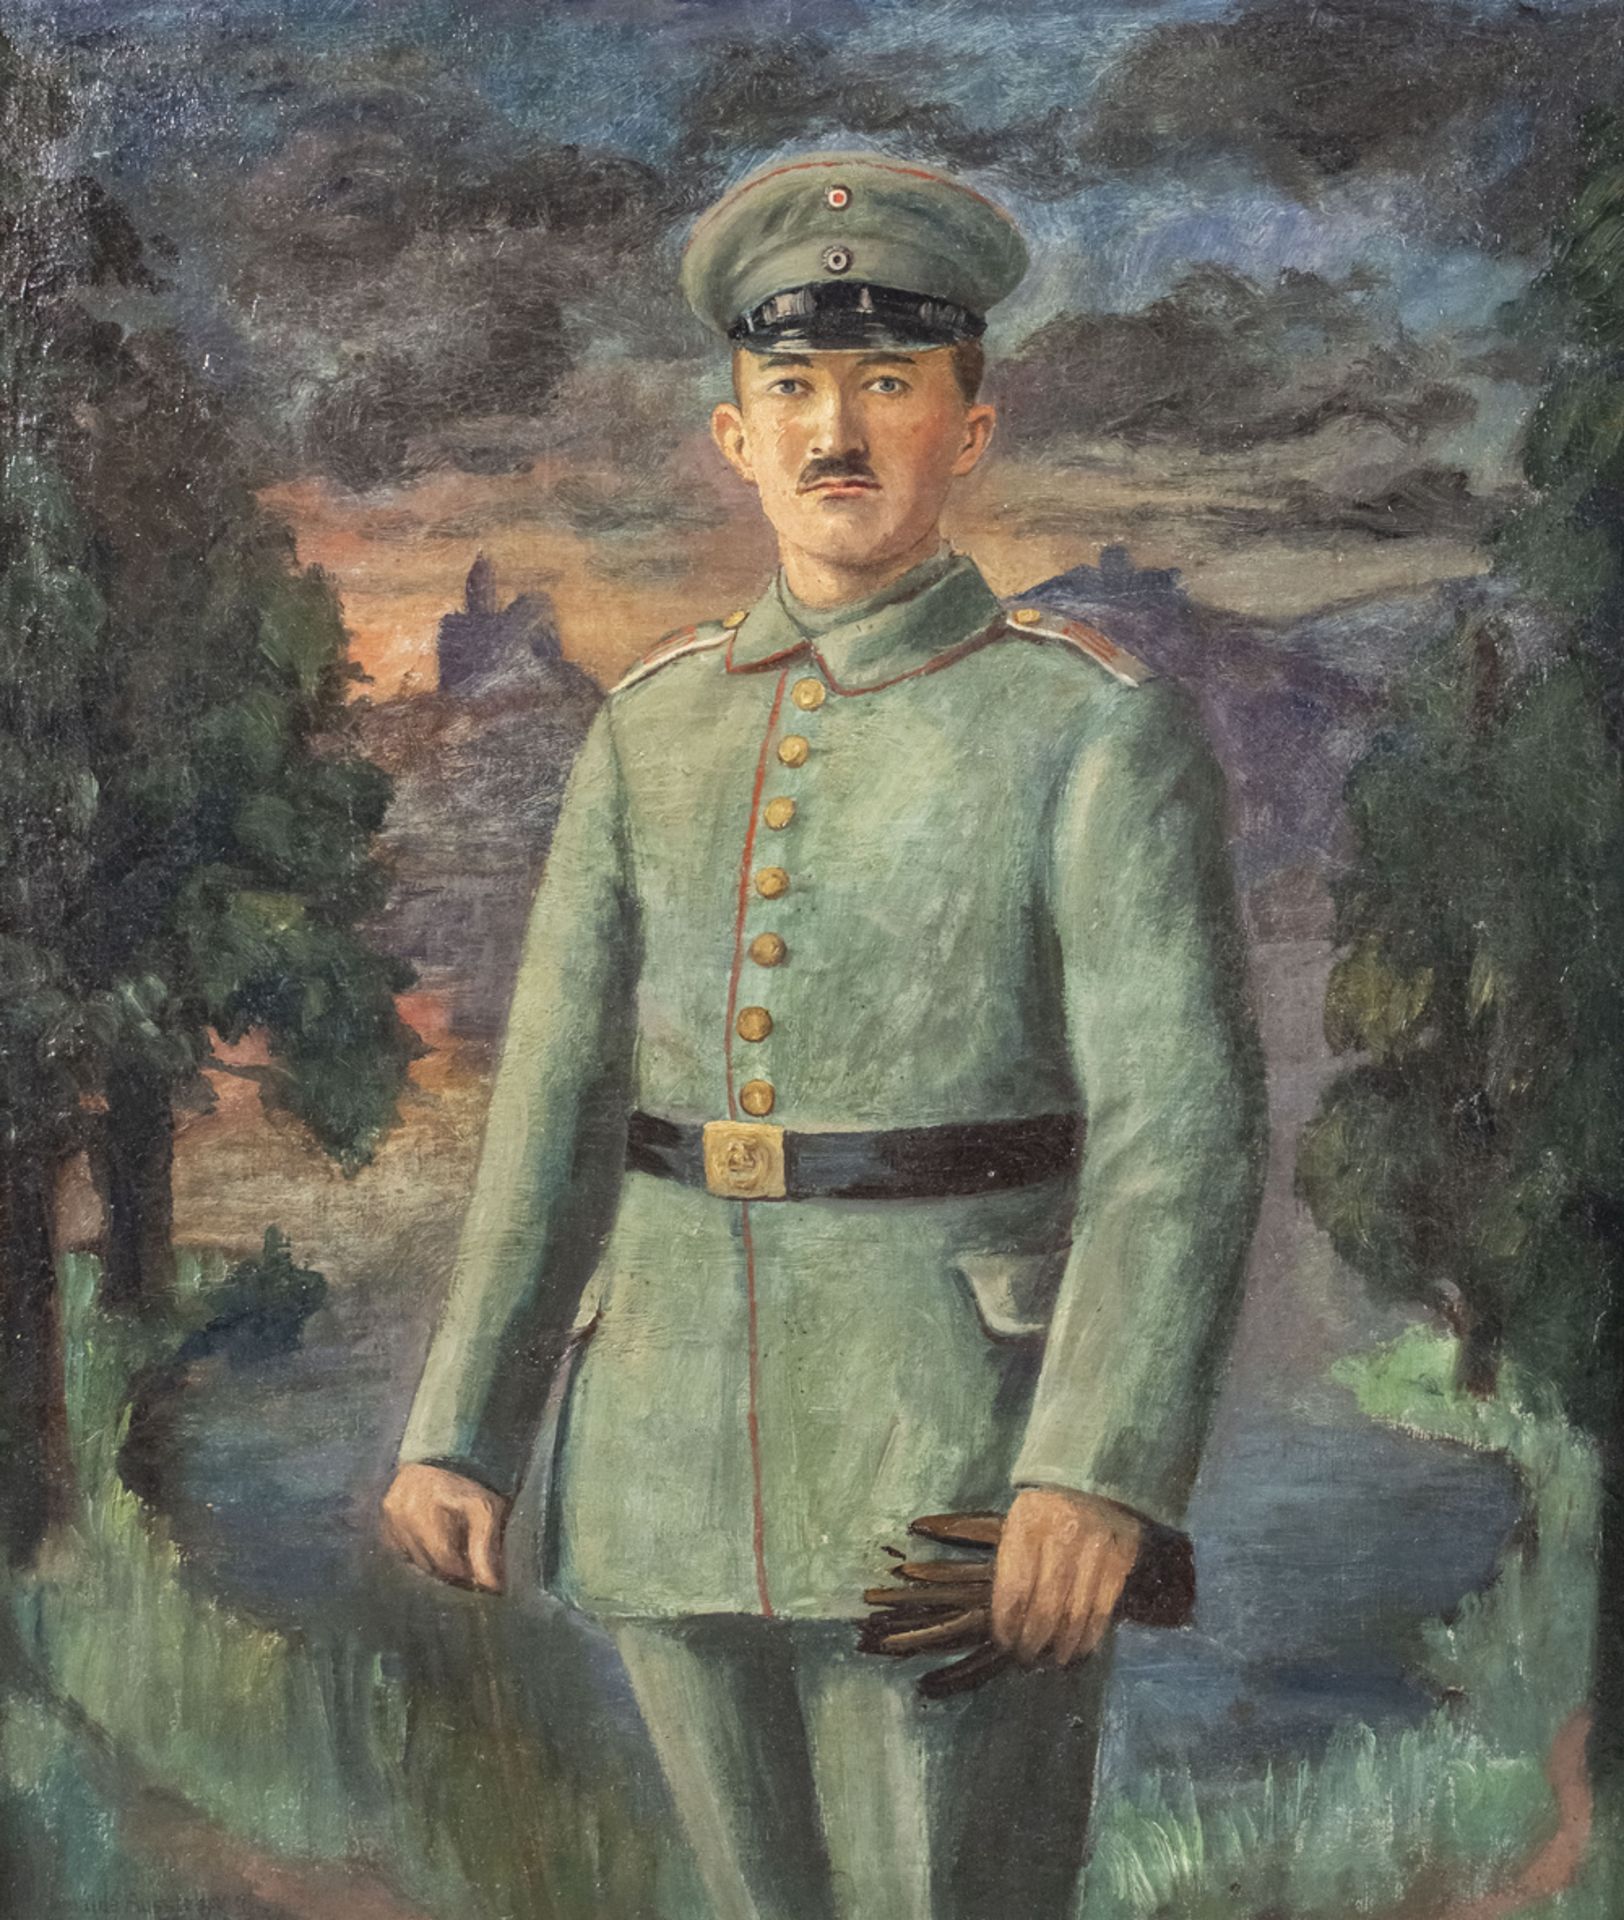 Gemälde eines Soldaten / A painting of a soldier, vermutlich 1. Weltkrieg